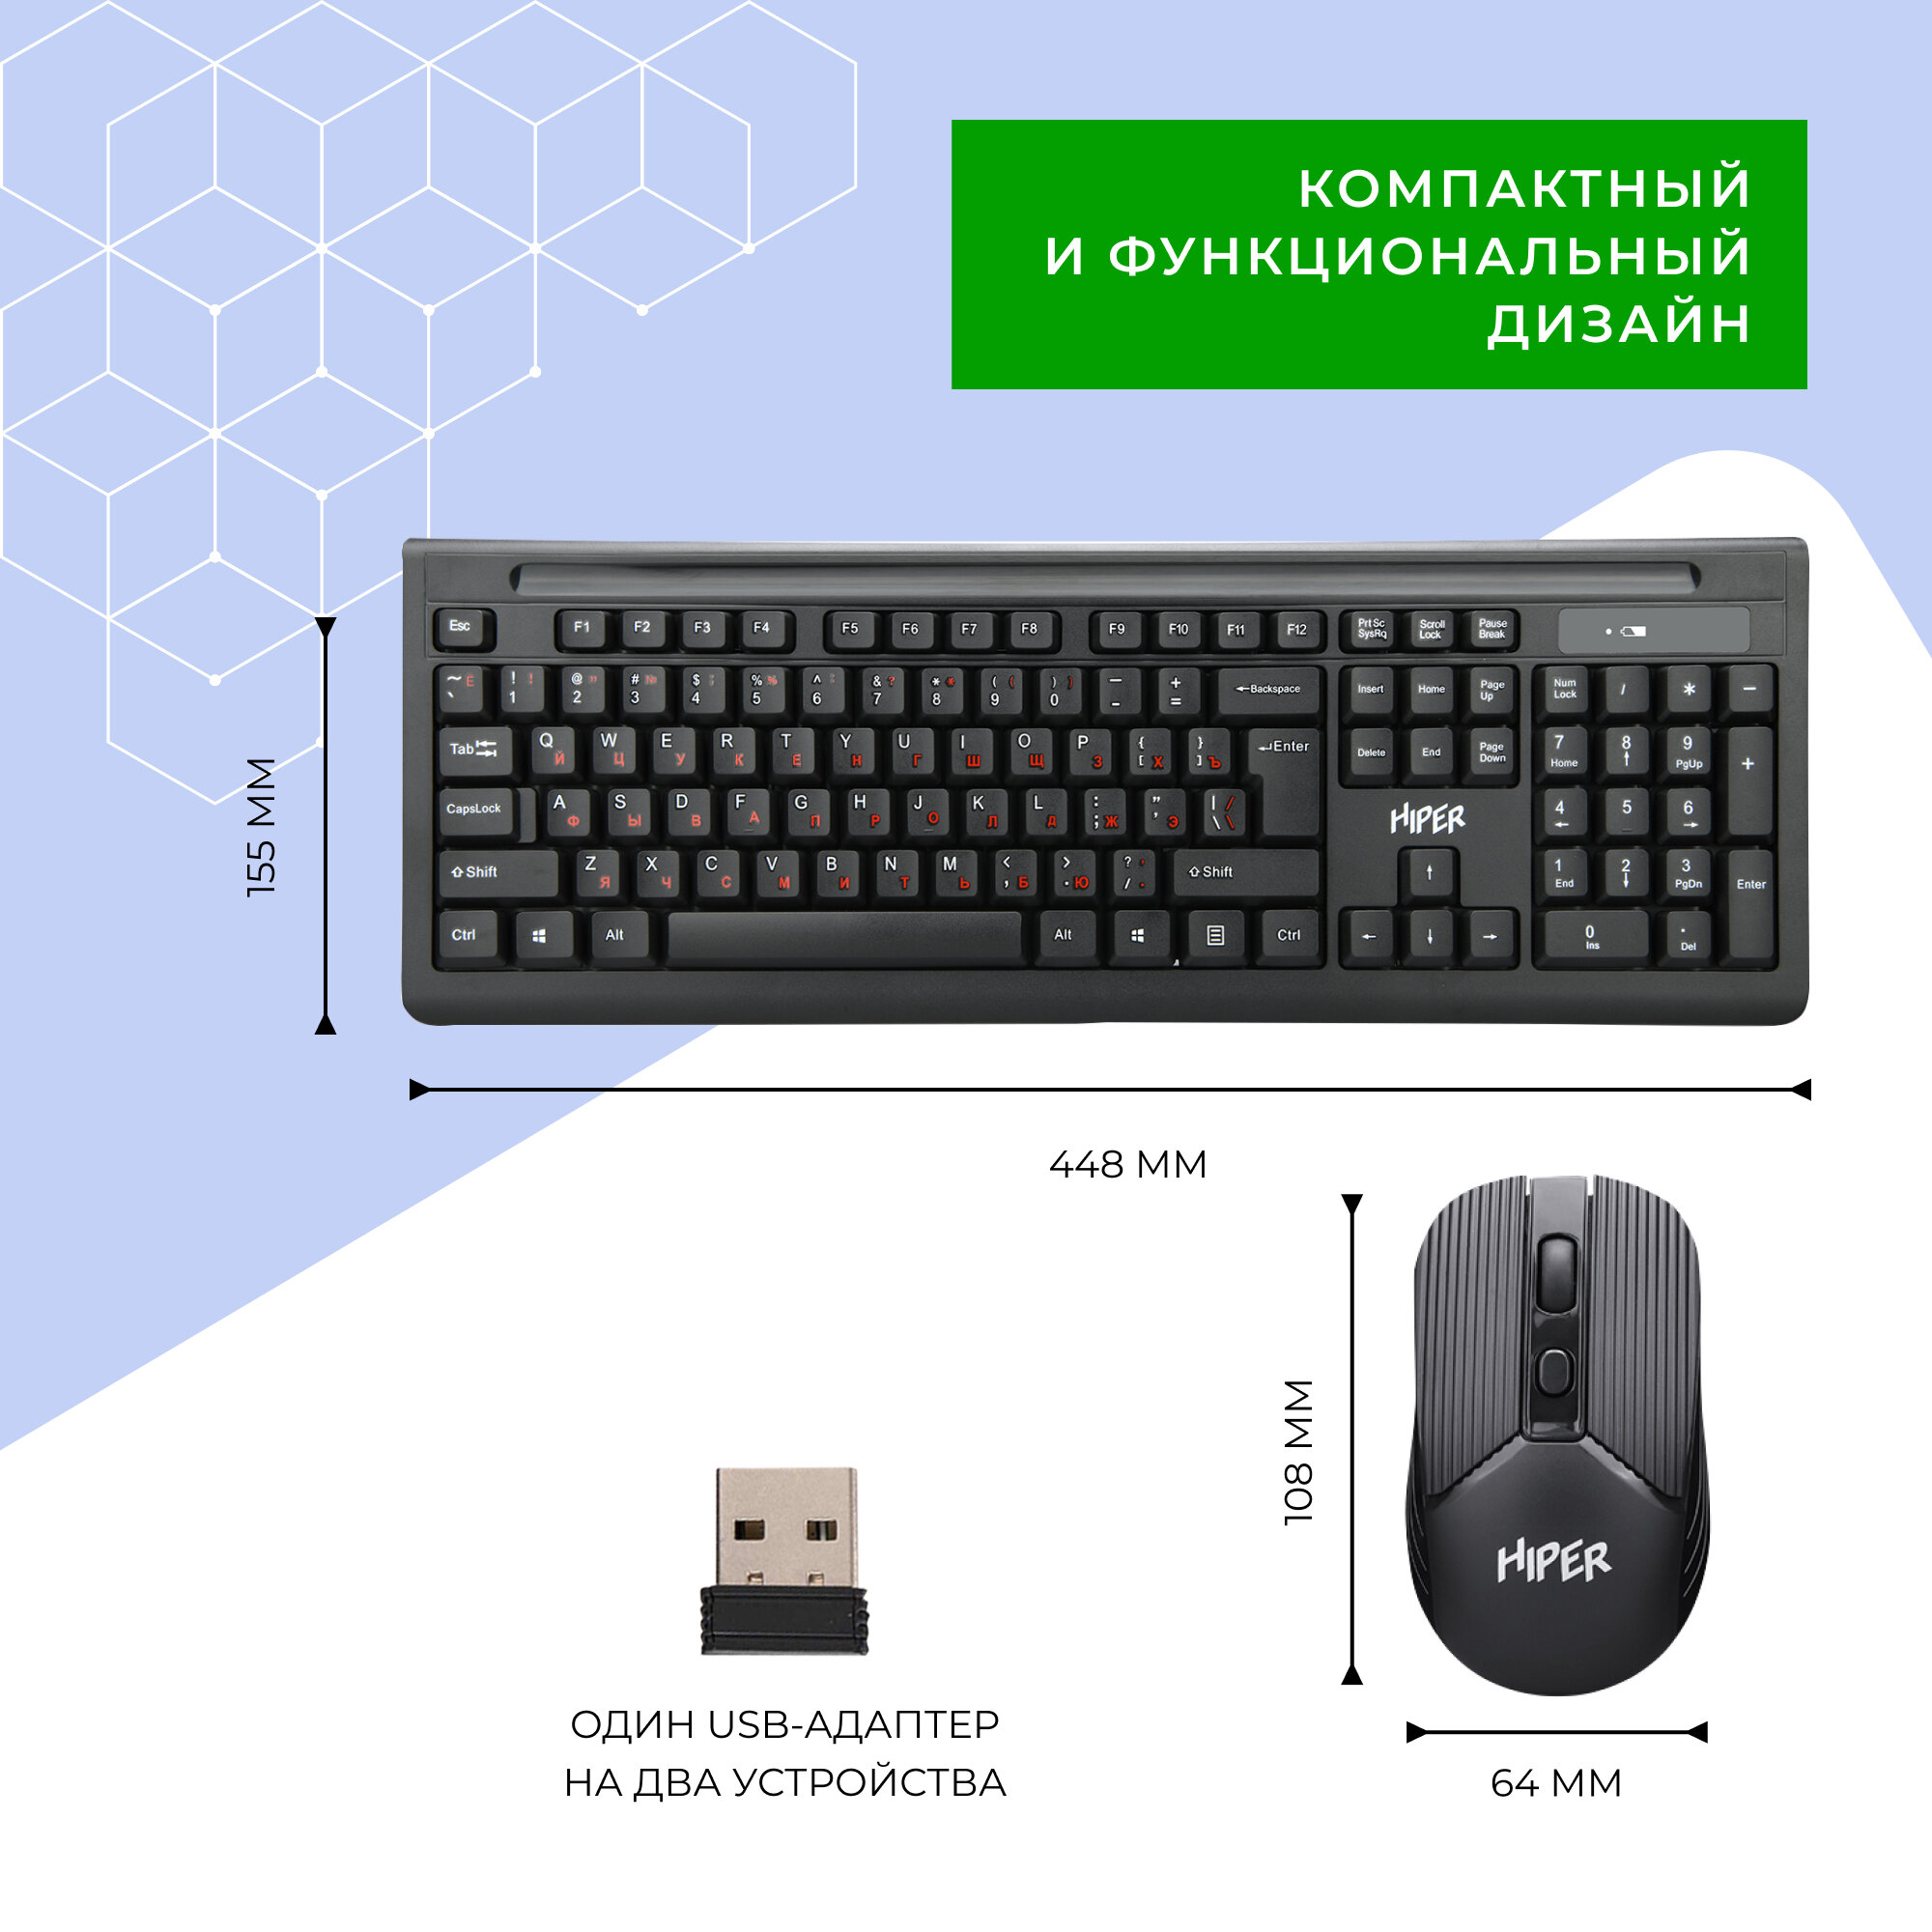 Беспроводной комплект клавиатура+мышь HIPER OSW-2000